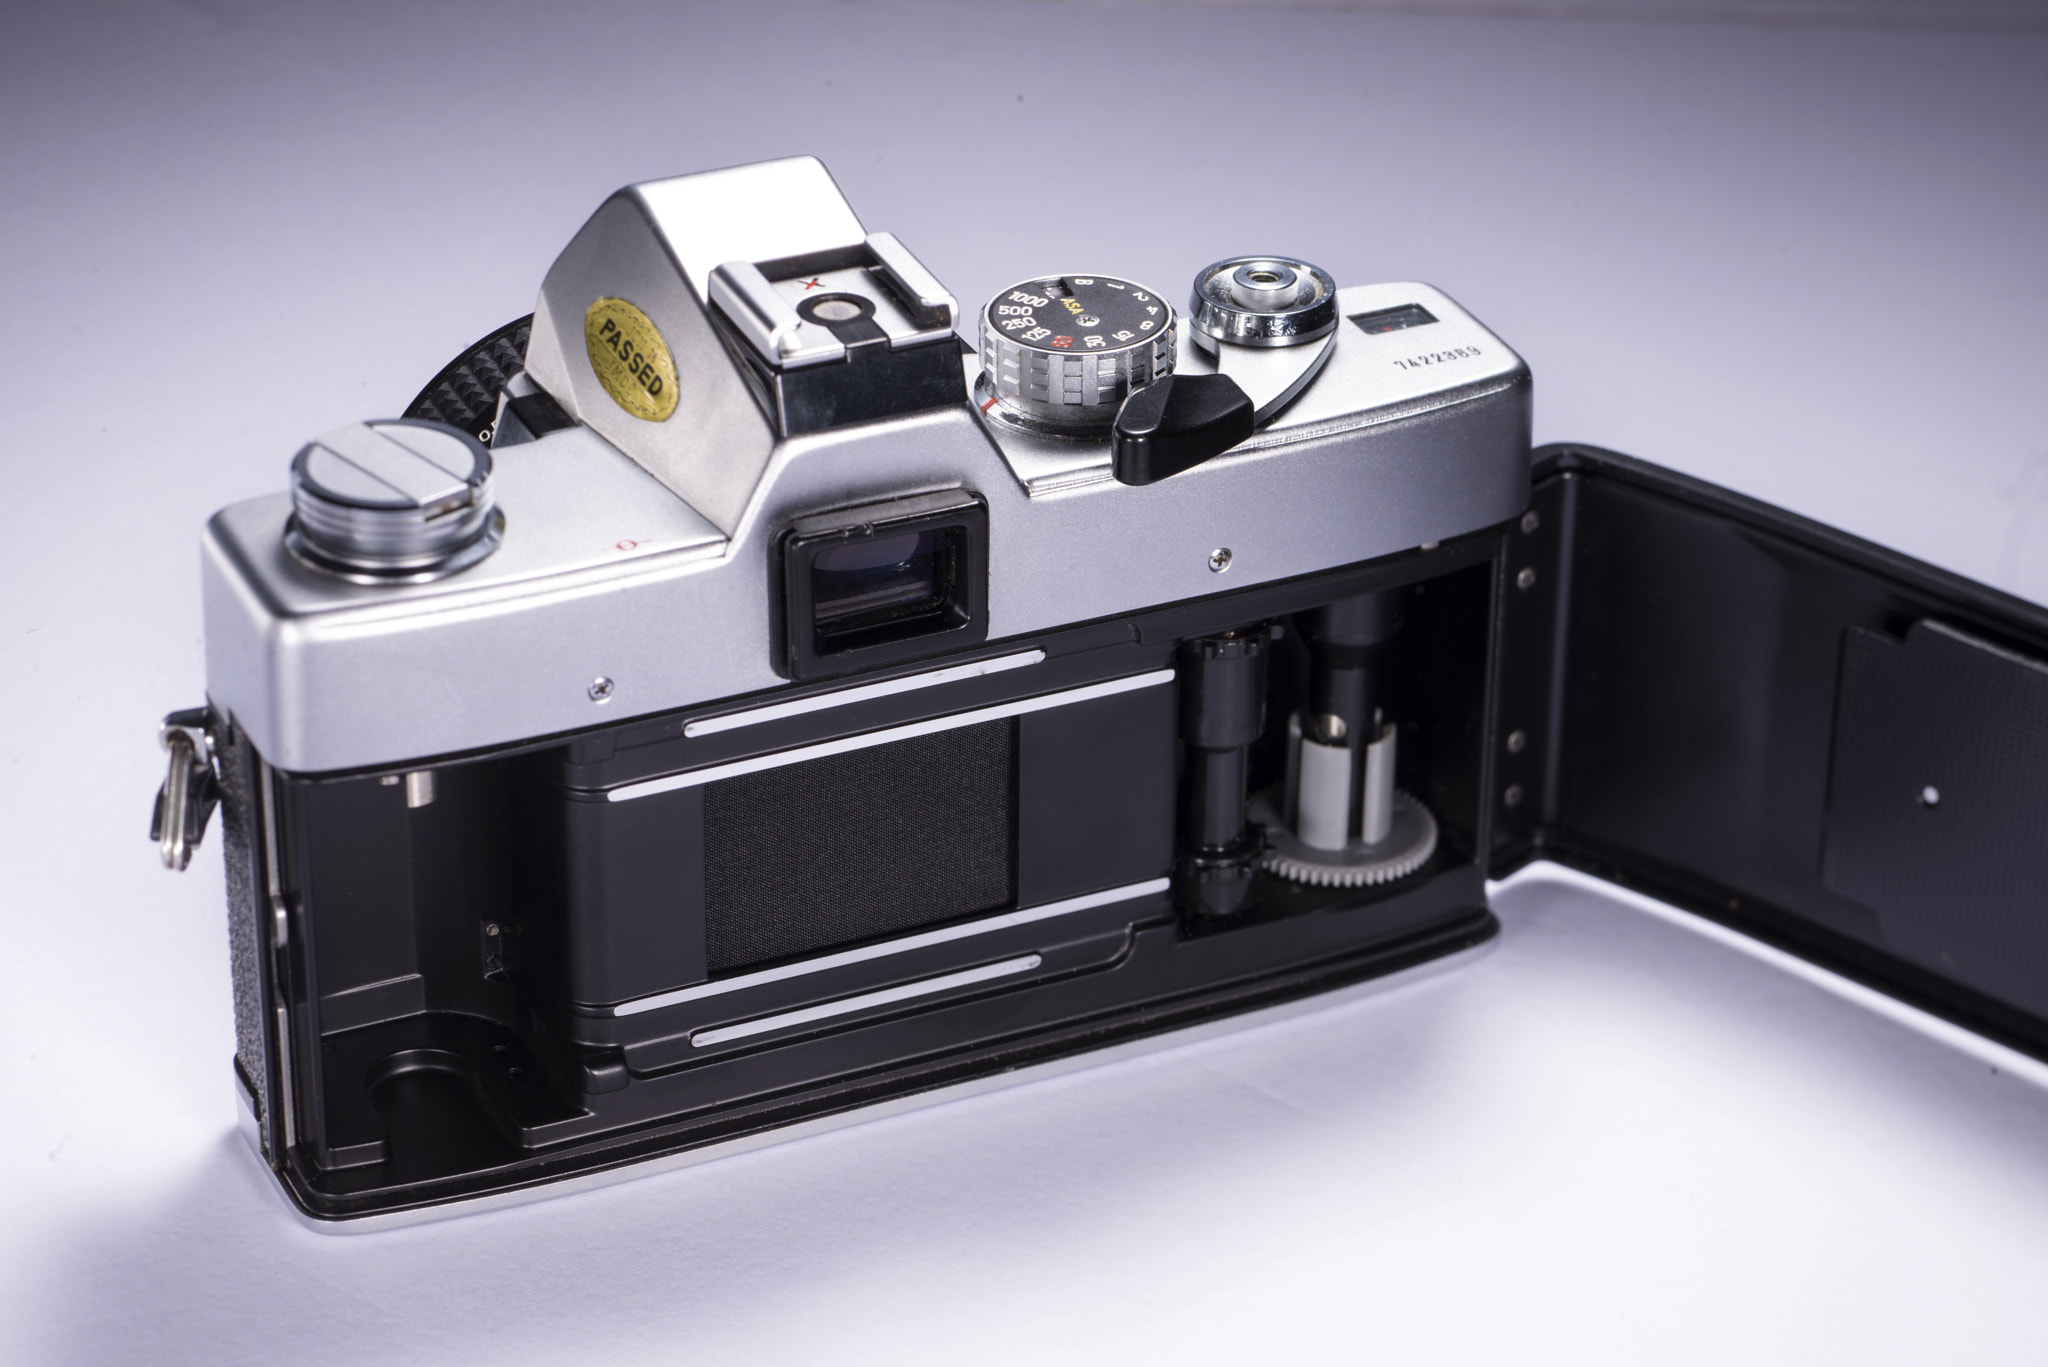 Nikon D800E + PC Micro-Nikkor 85mm f/2.8D sample photo. Minolta srtback photography